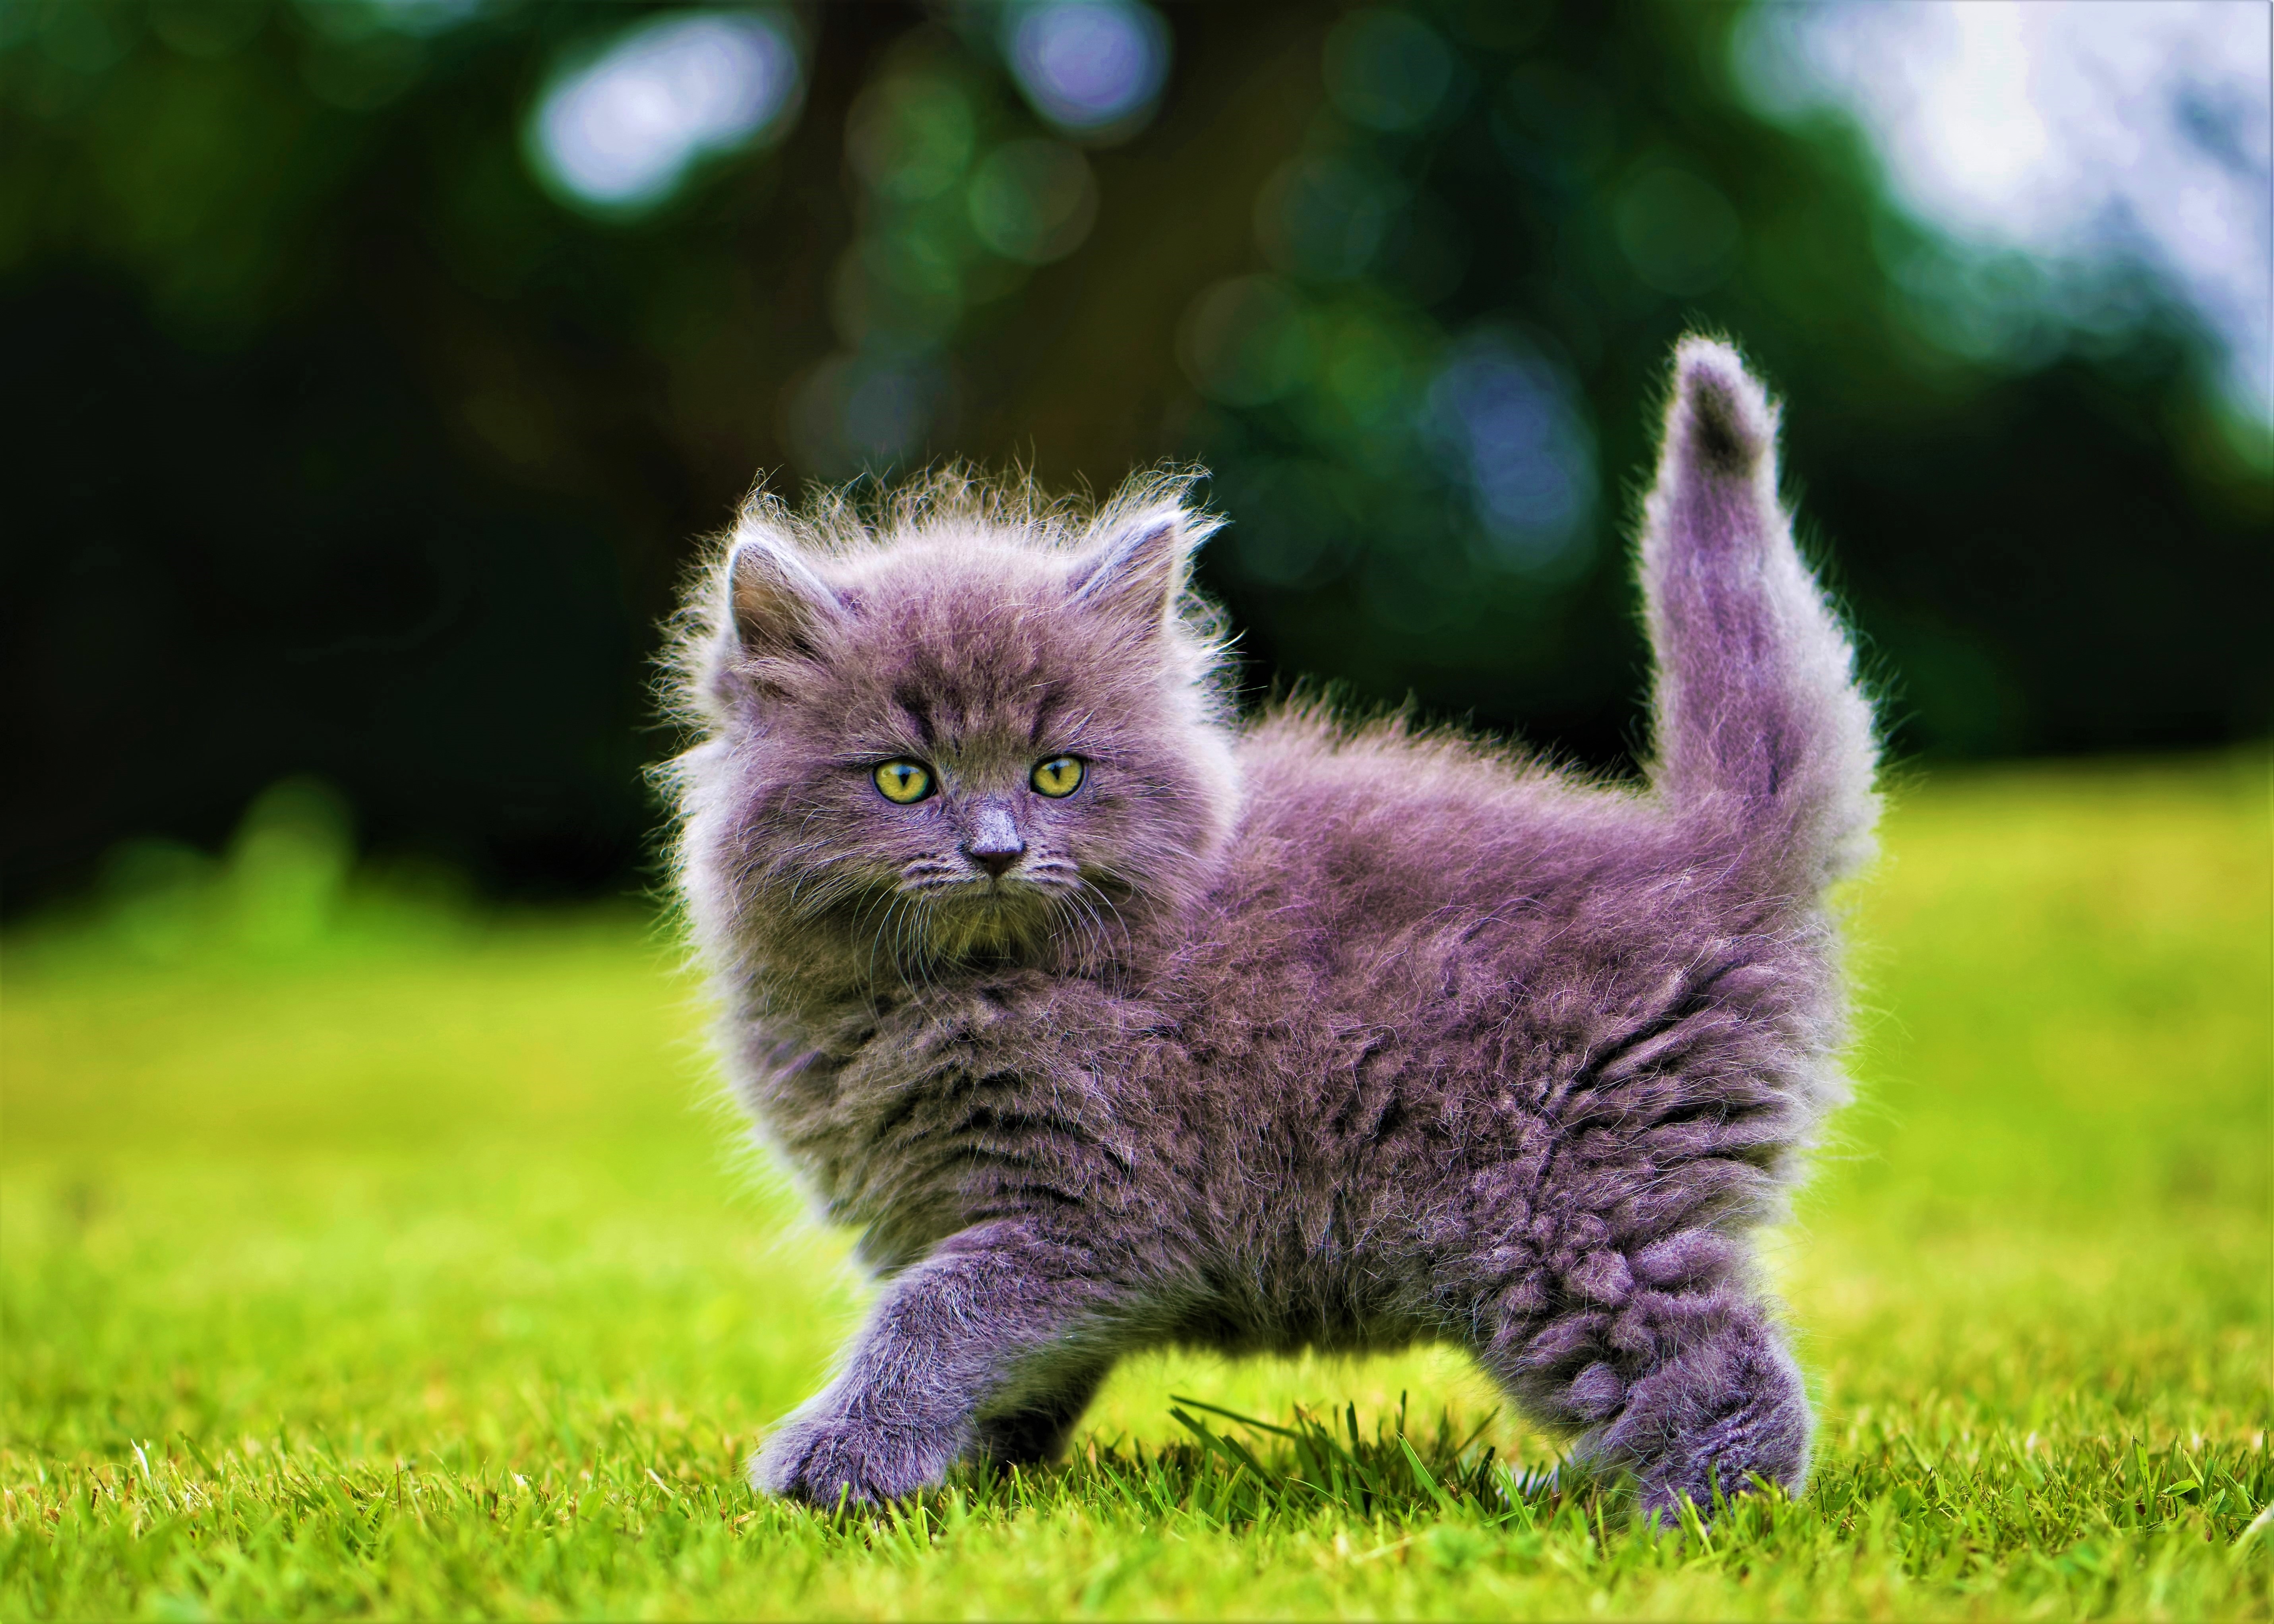 A funny kitten in a green field.